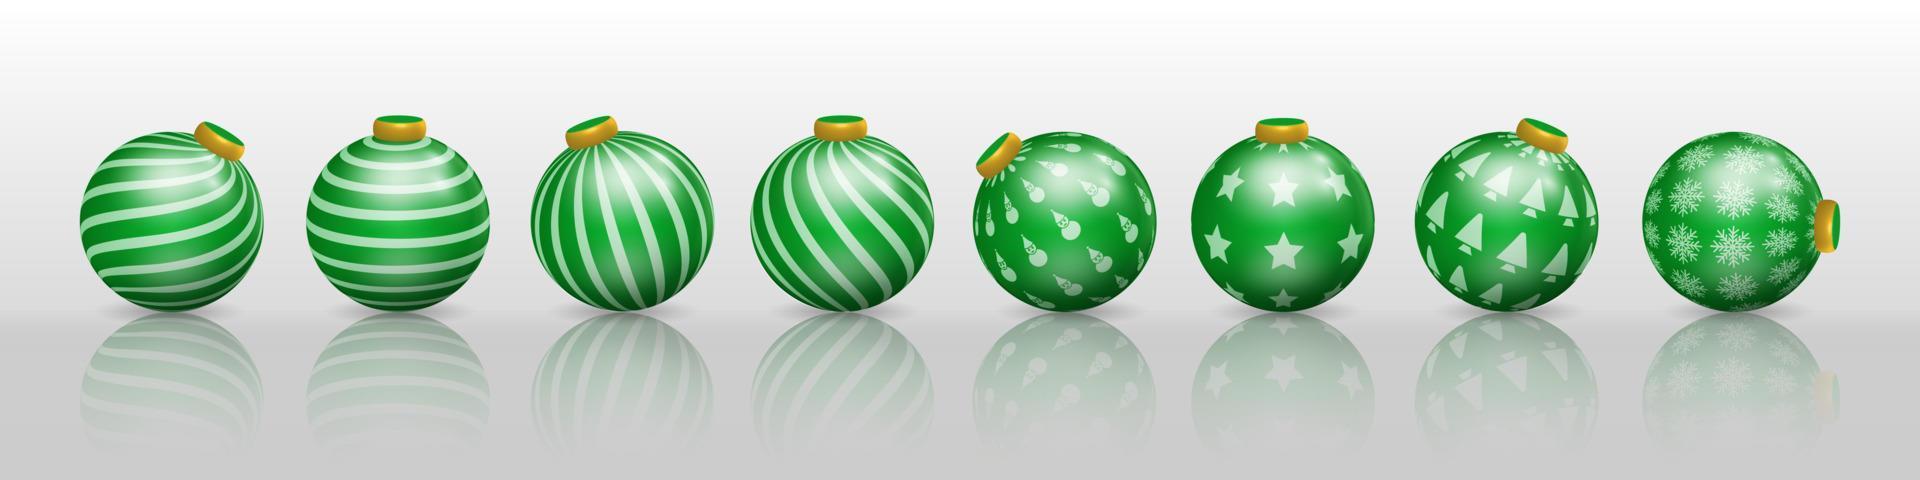 satz grüne weihnachtskugeldekorationen, verzierungen mit verschiedenen mustern vektor